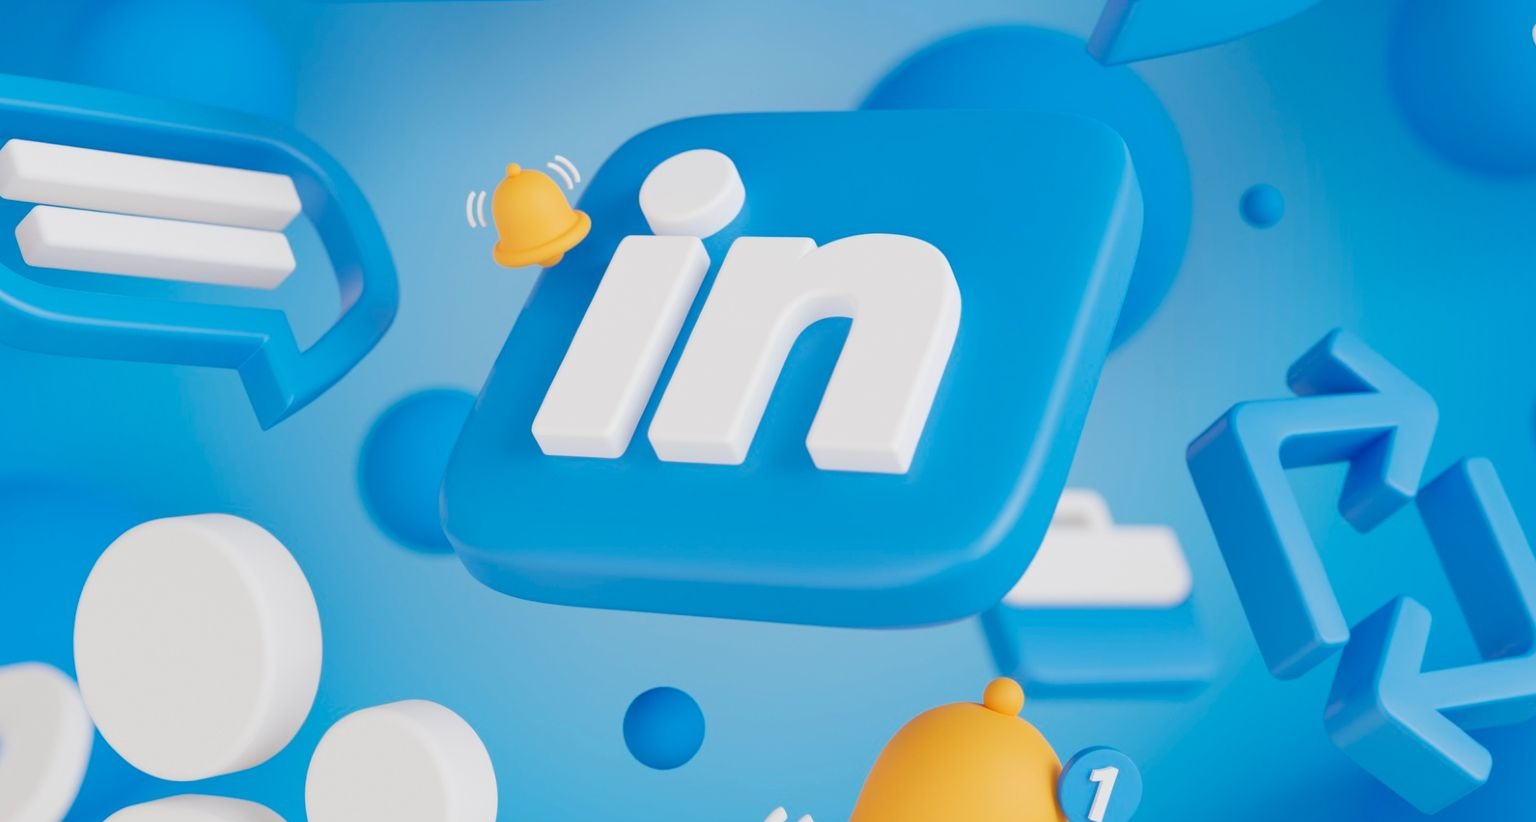 Ilustración del logotipo de LinkedIn